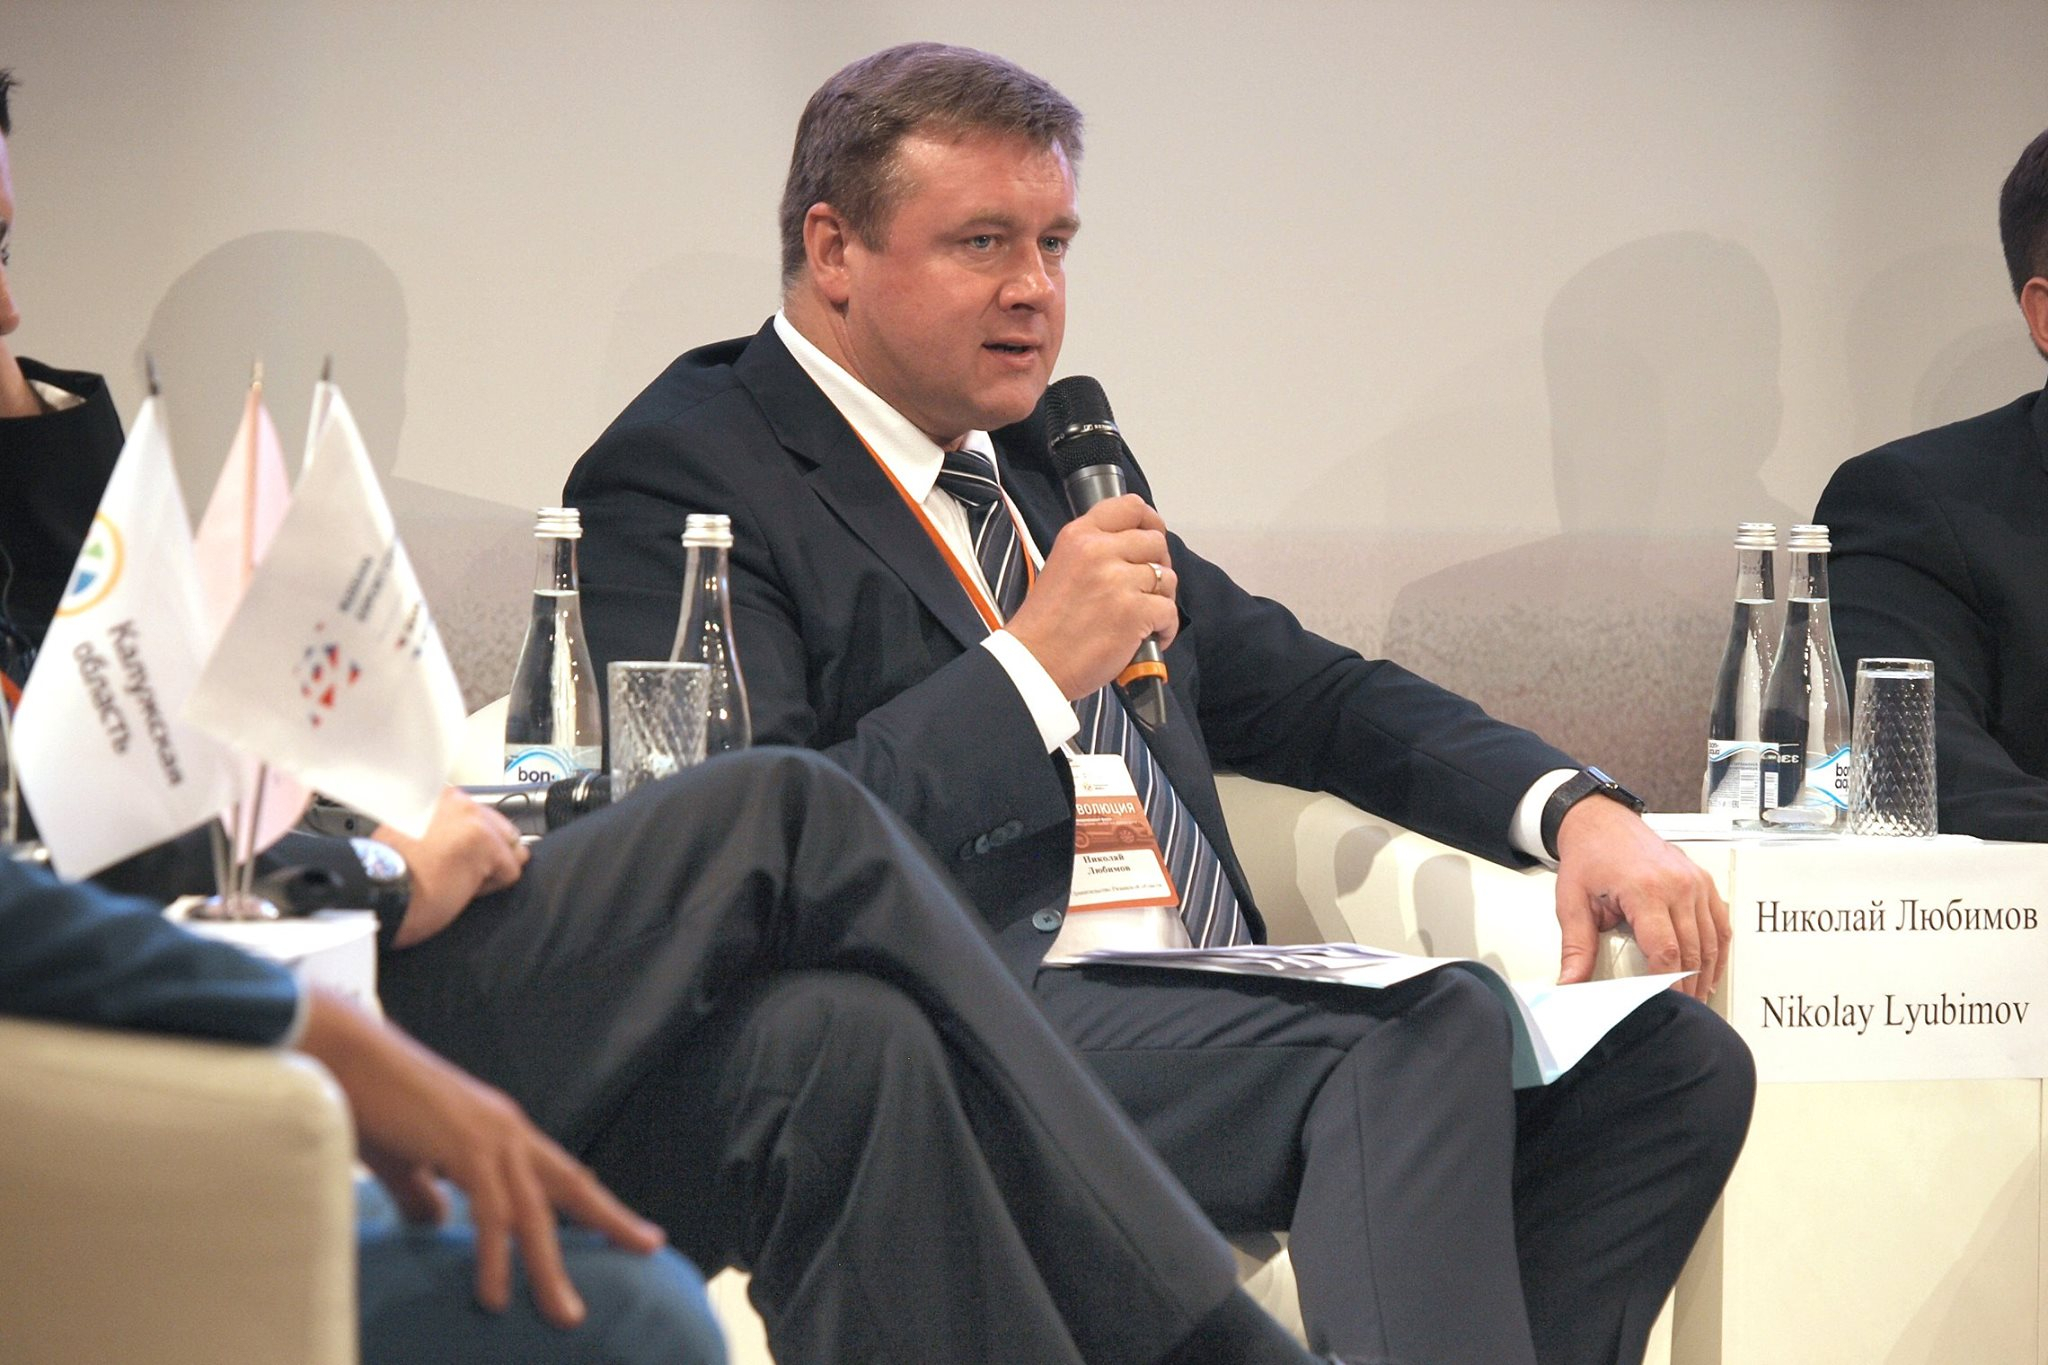 Николая Любимова зарегистрировали как губернатора, на основании результатов выборов